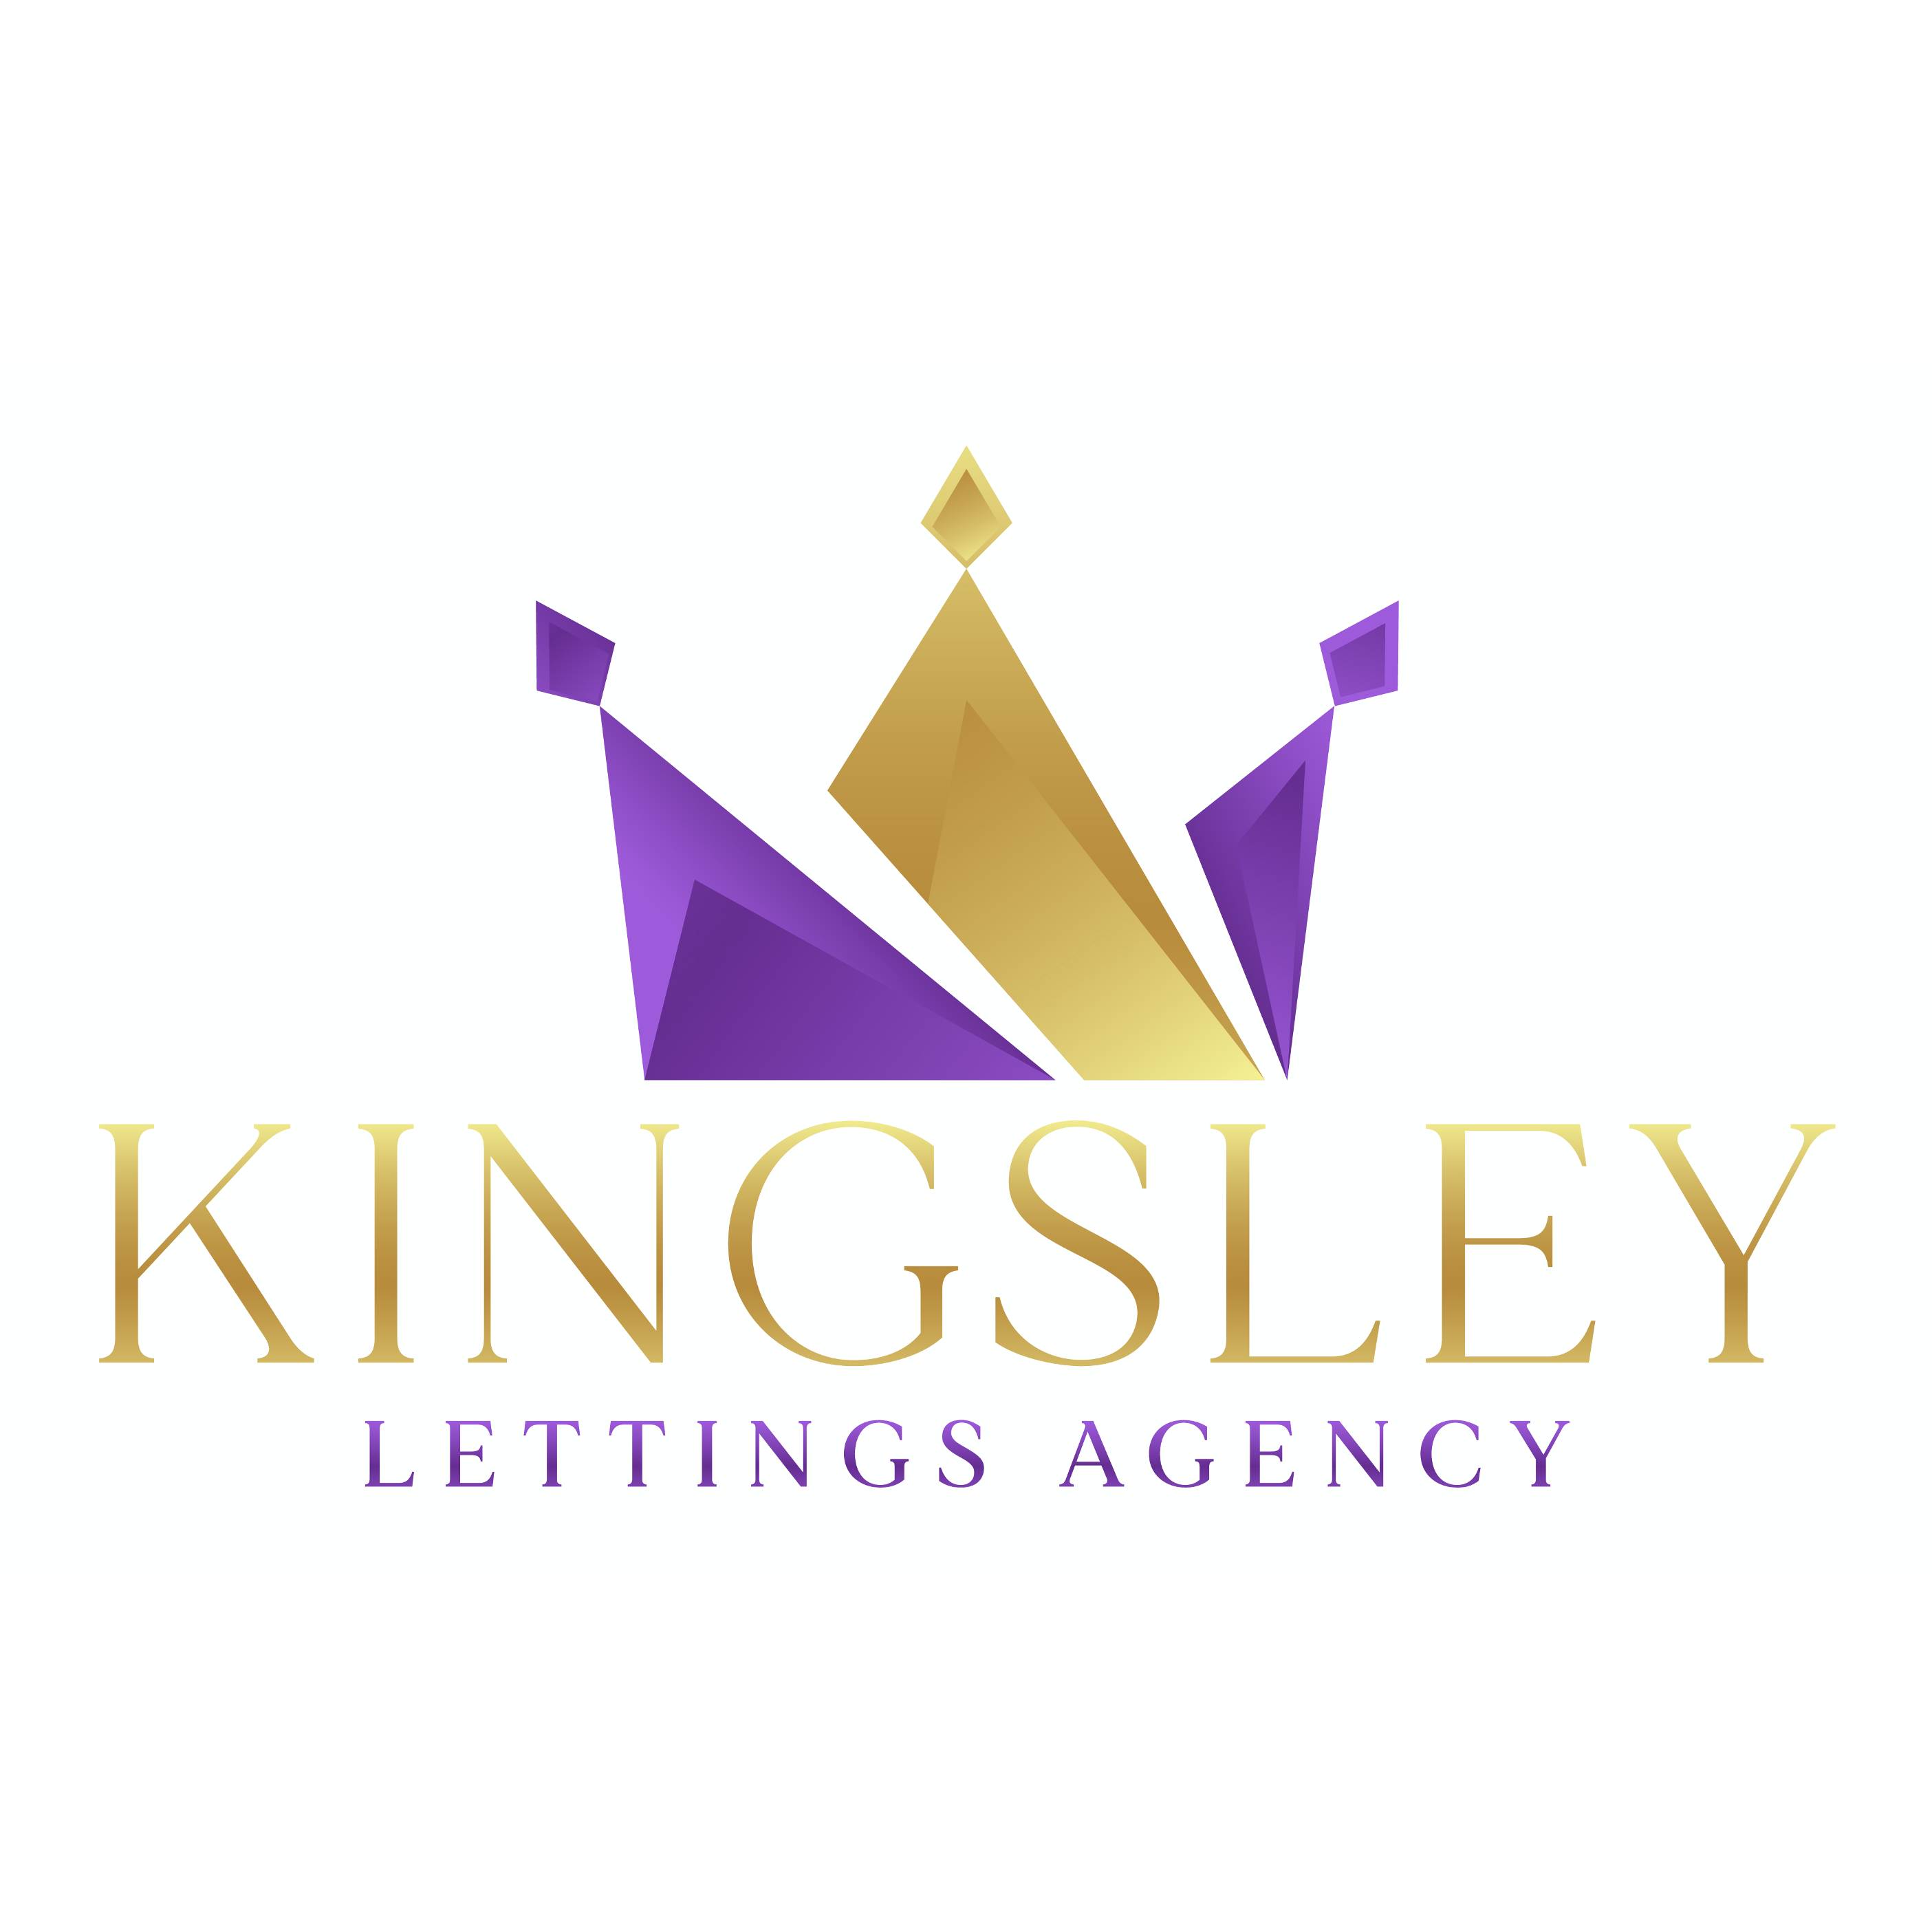 Kingsley Lettings Agency